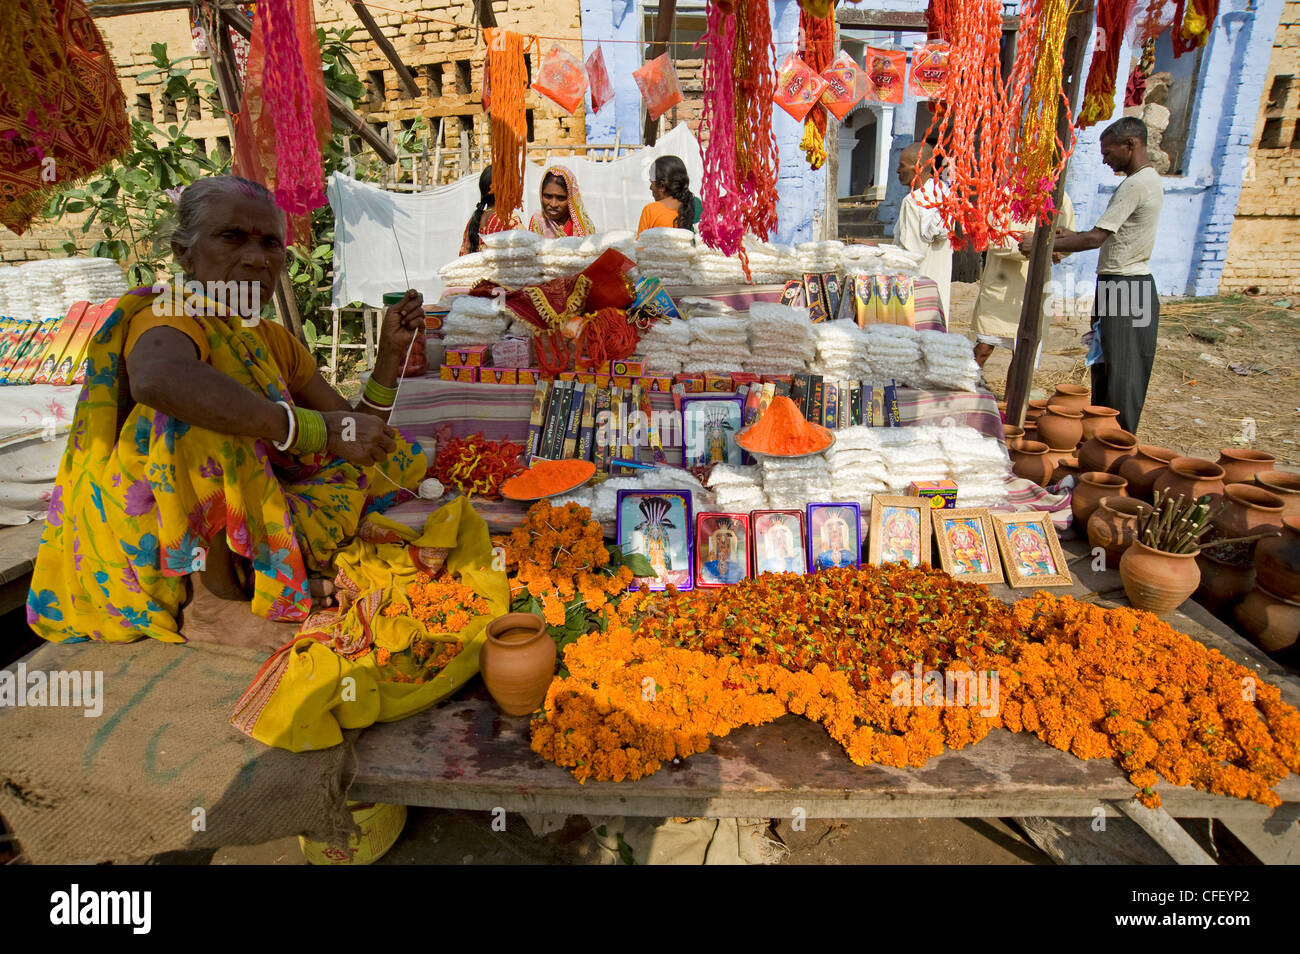 Frau verkaufen Mala (Girlanden), Bilder von Hindu-Gottheiten und Agarbathi (Räucherstäbchen) Sonepur Vieh Messe, Bihar, Indien Stockfoto